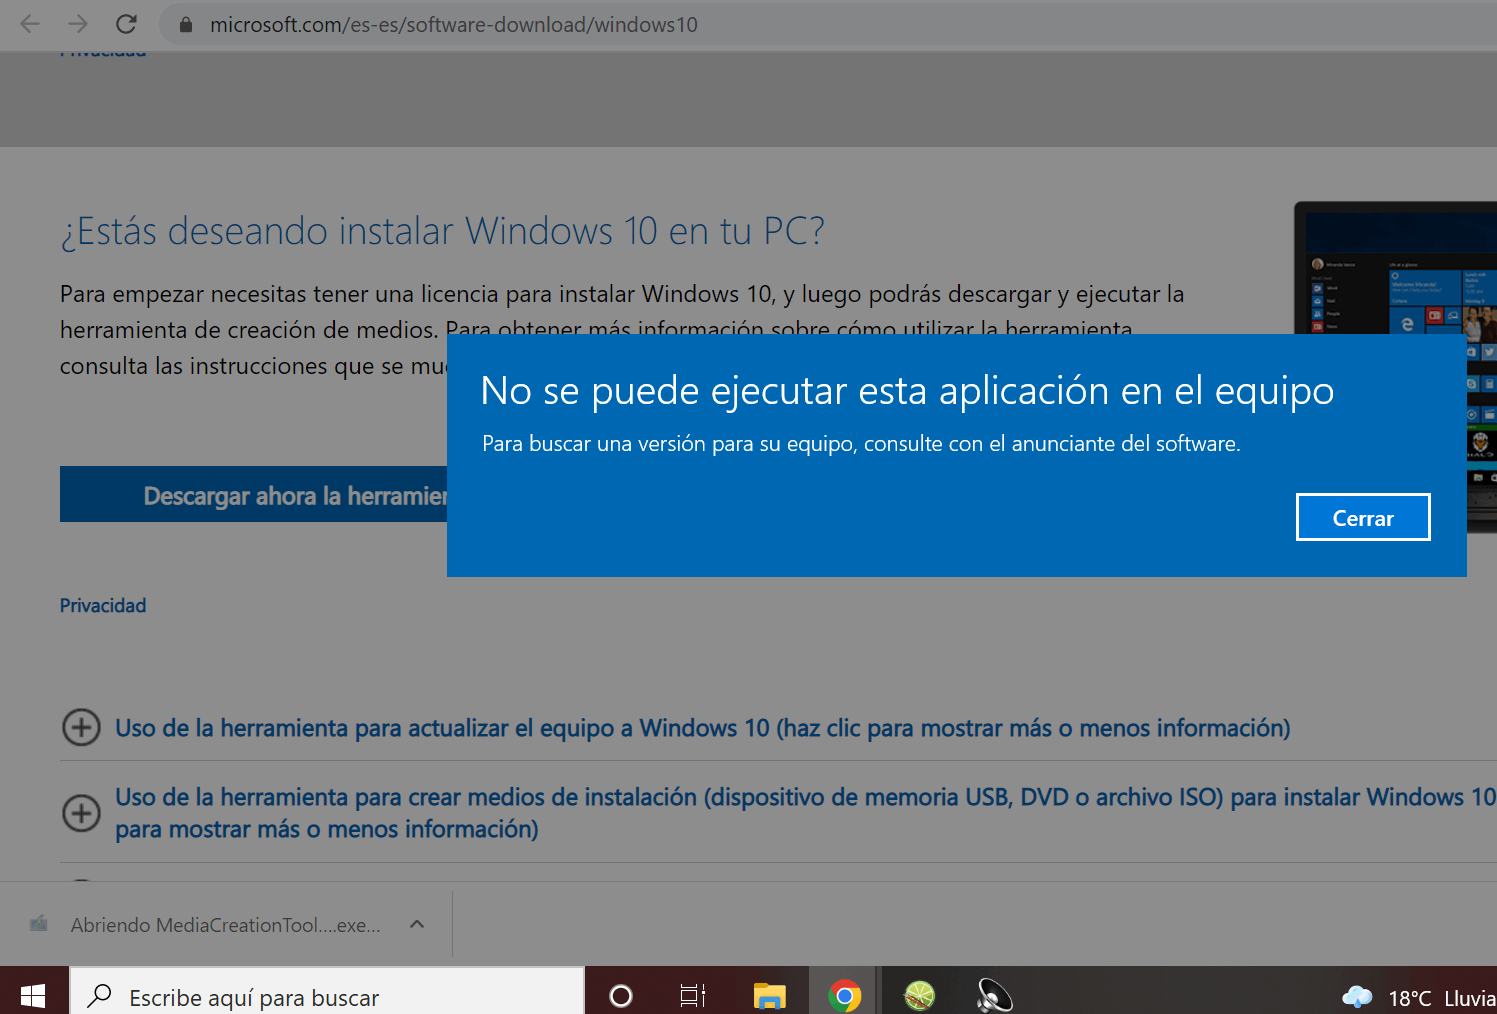 Windows 10 No Se Puede Ejecutar Esta Aplicación En El Equipo Para Microsoft Community 4858